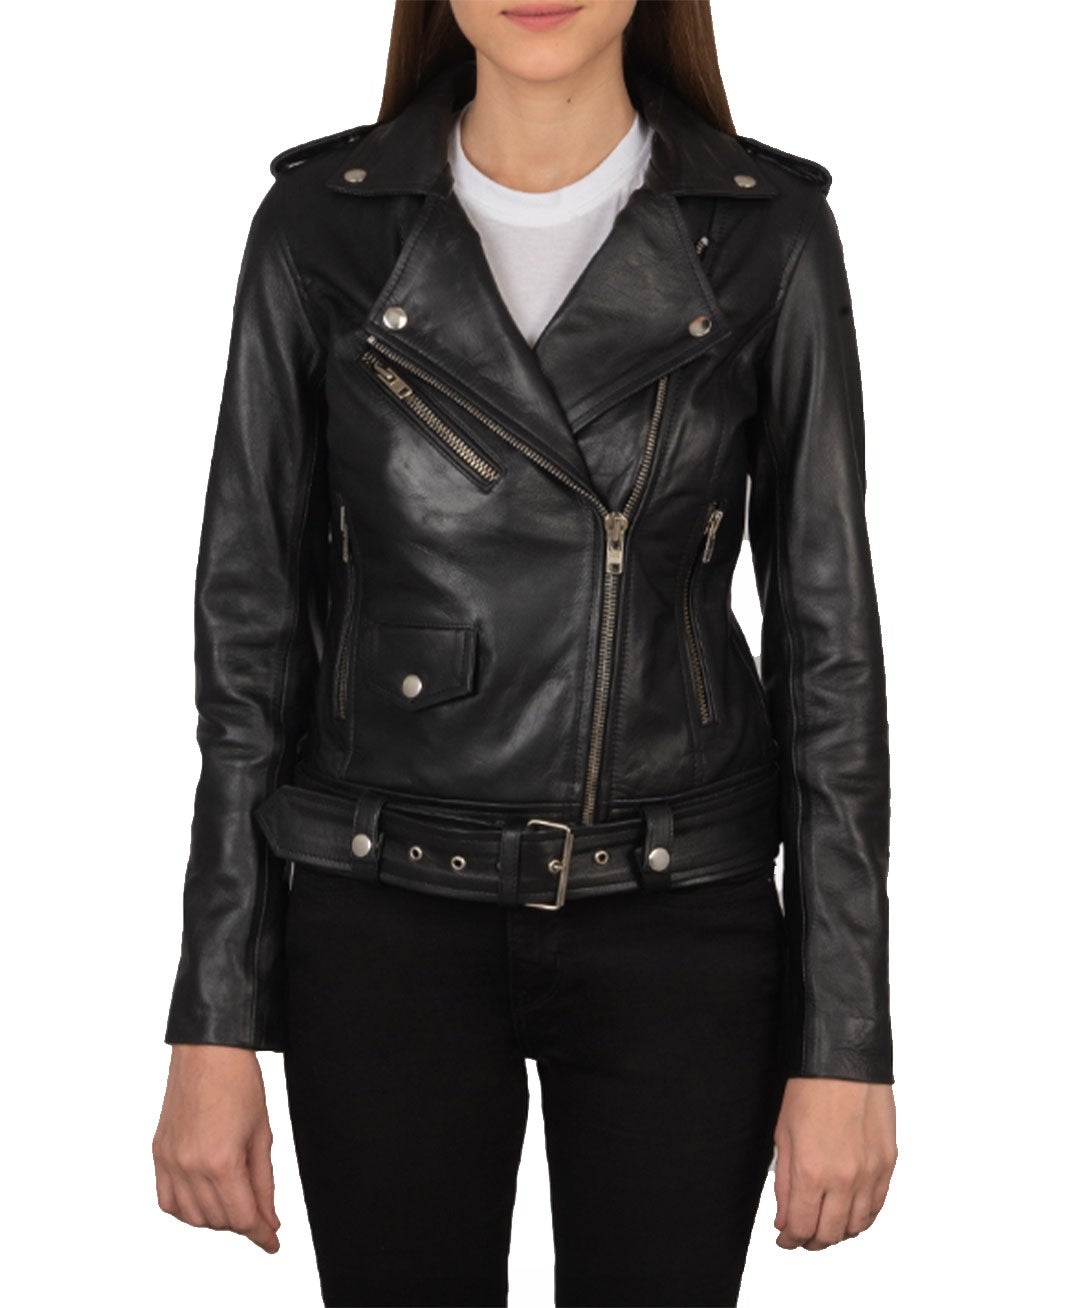 The Jacket Maker + Alison Black Leather Biker Jacket